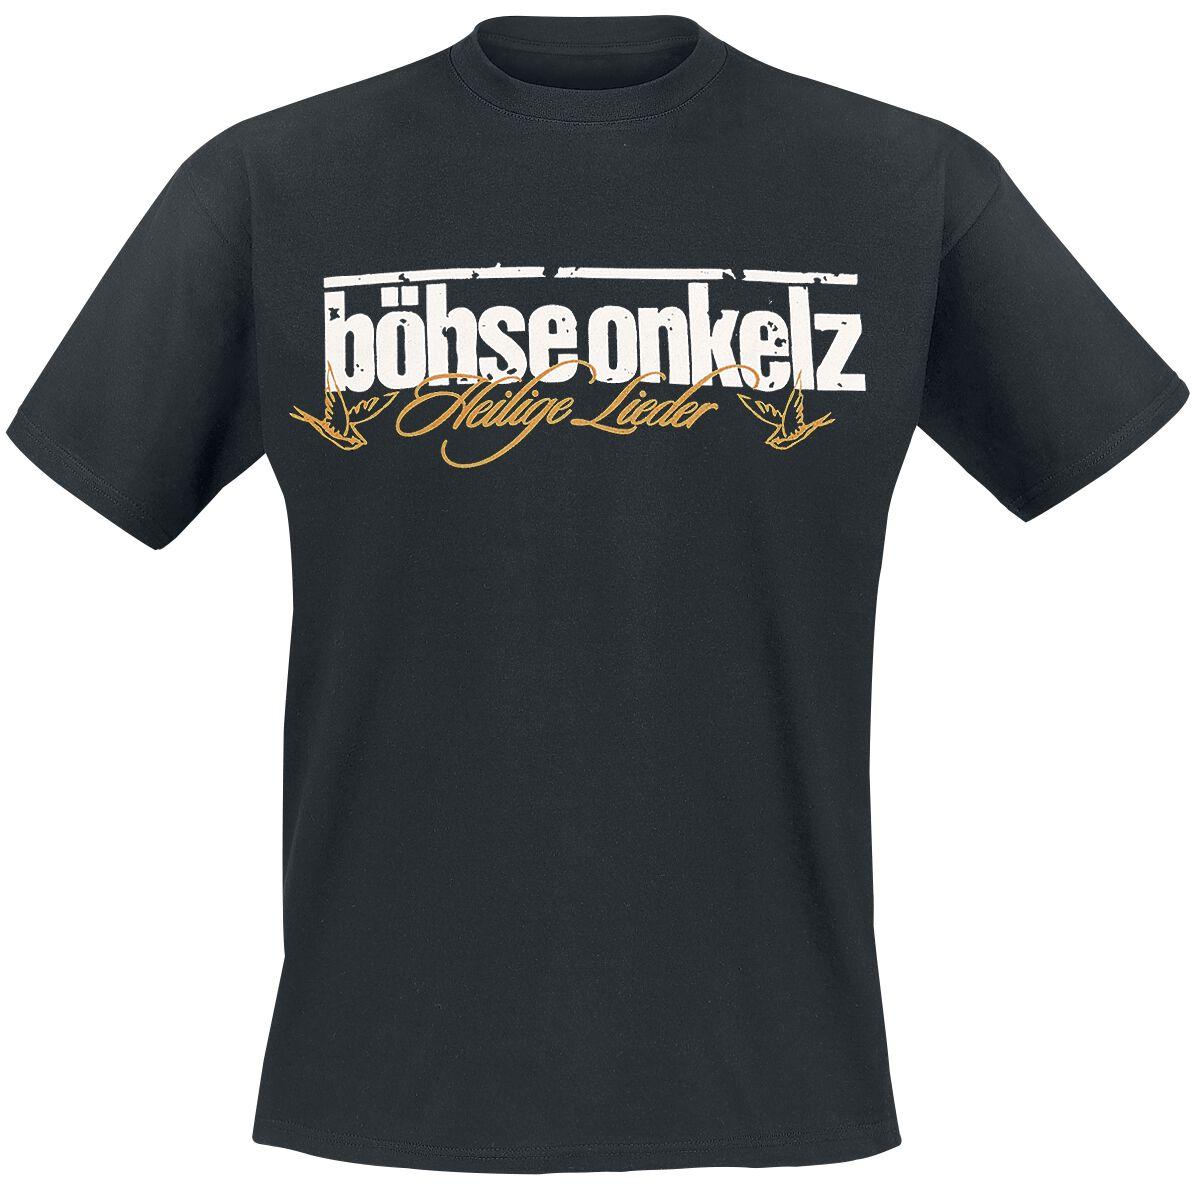 Böhse Onkelz T-Shirt - Gehasst, verdammt, vergöttert II. - M bis 5XL - für Männer - Größe XL - schwarz  - Lizenziertes Merchandise!